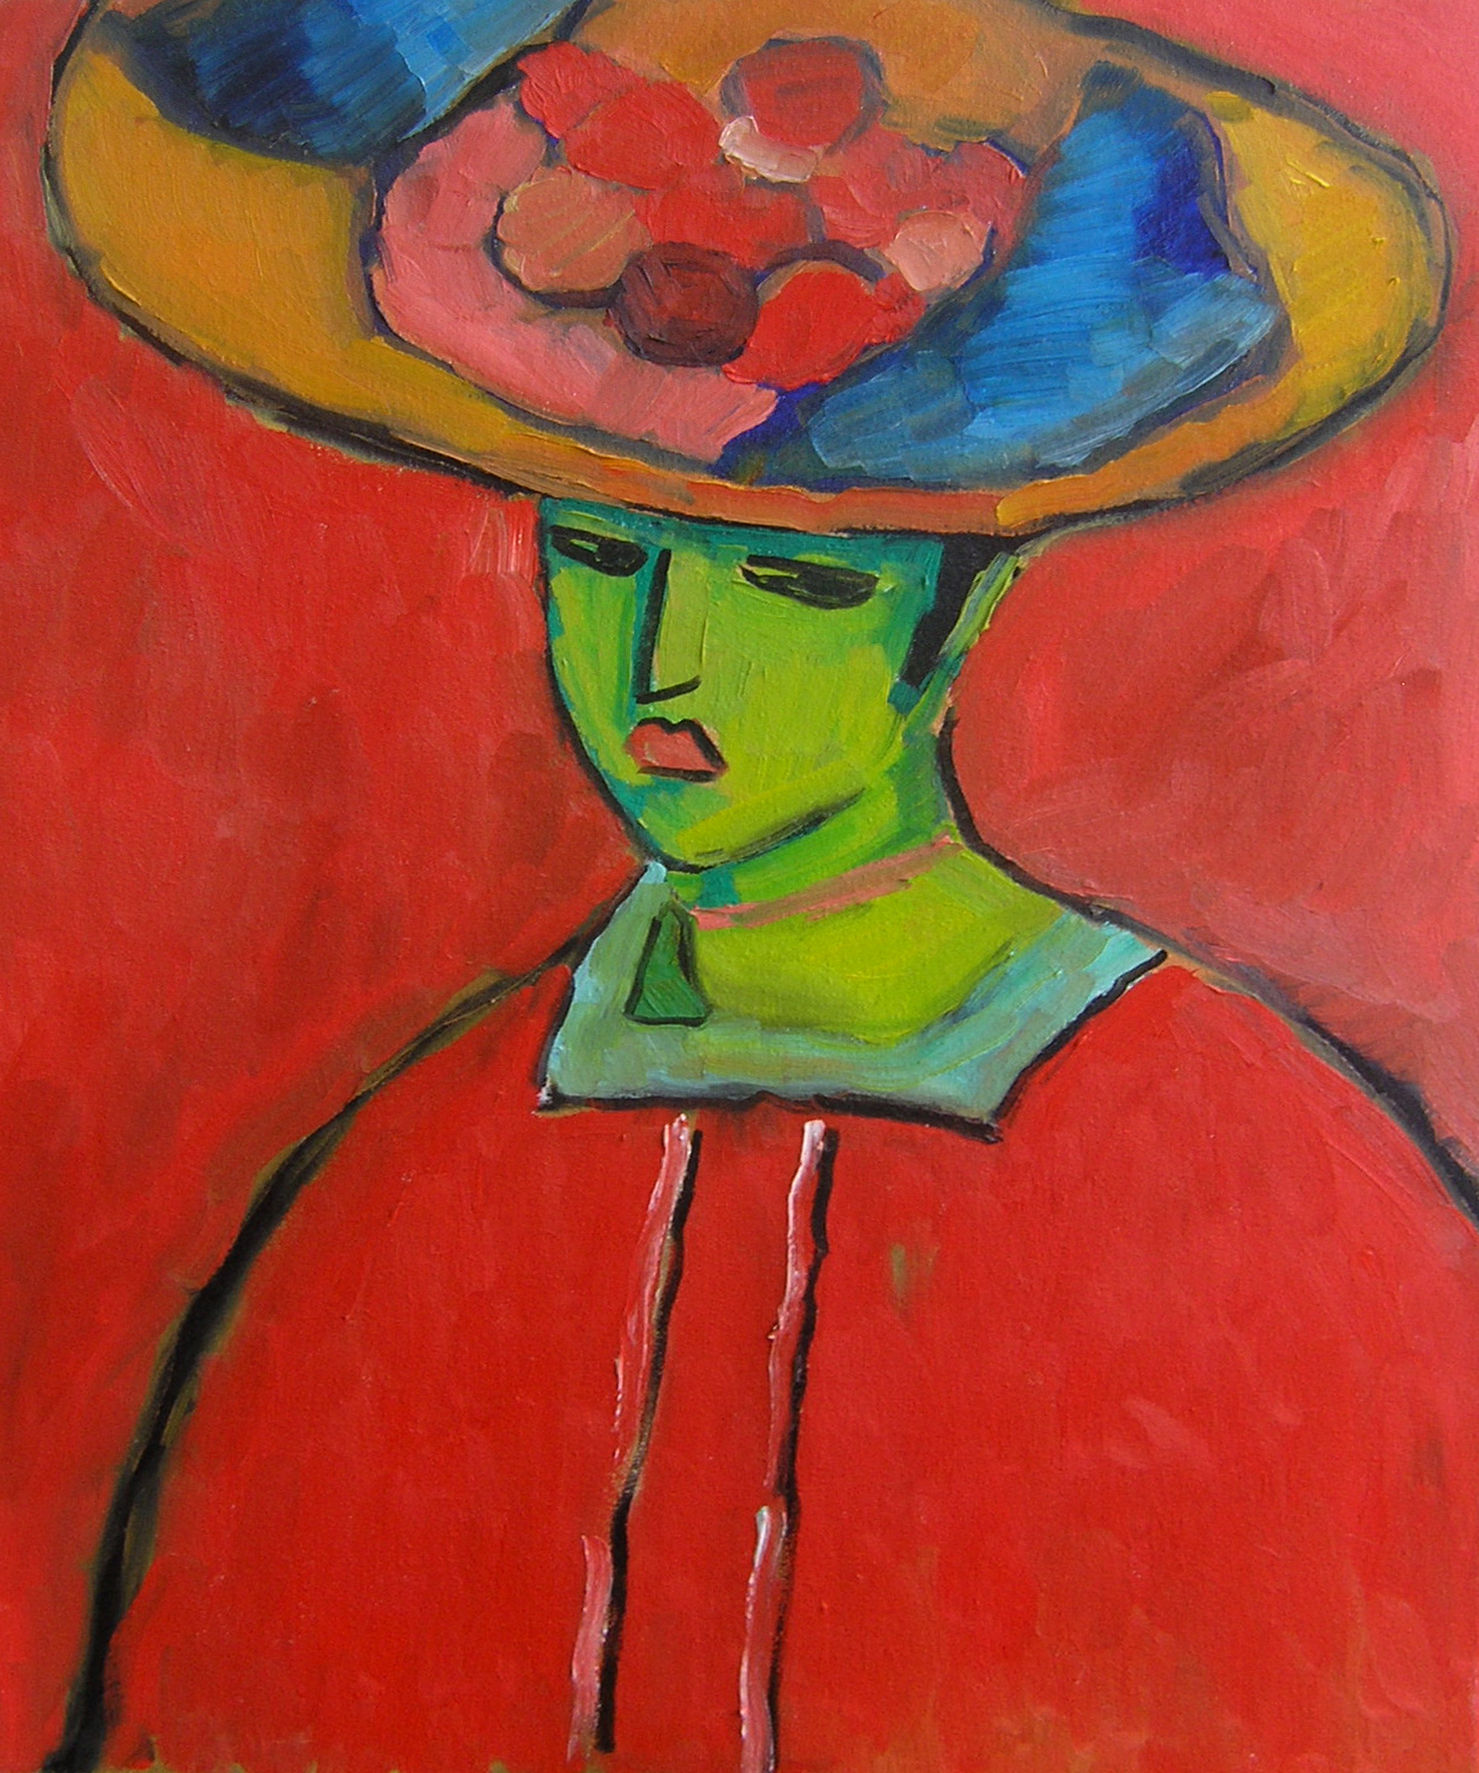 Oil on canvas interpretation of Alexej von Jawlensky's Schokko with Wide Brimmed Hat.